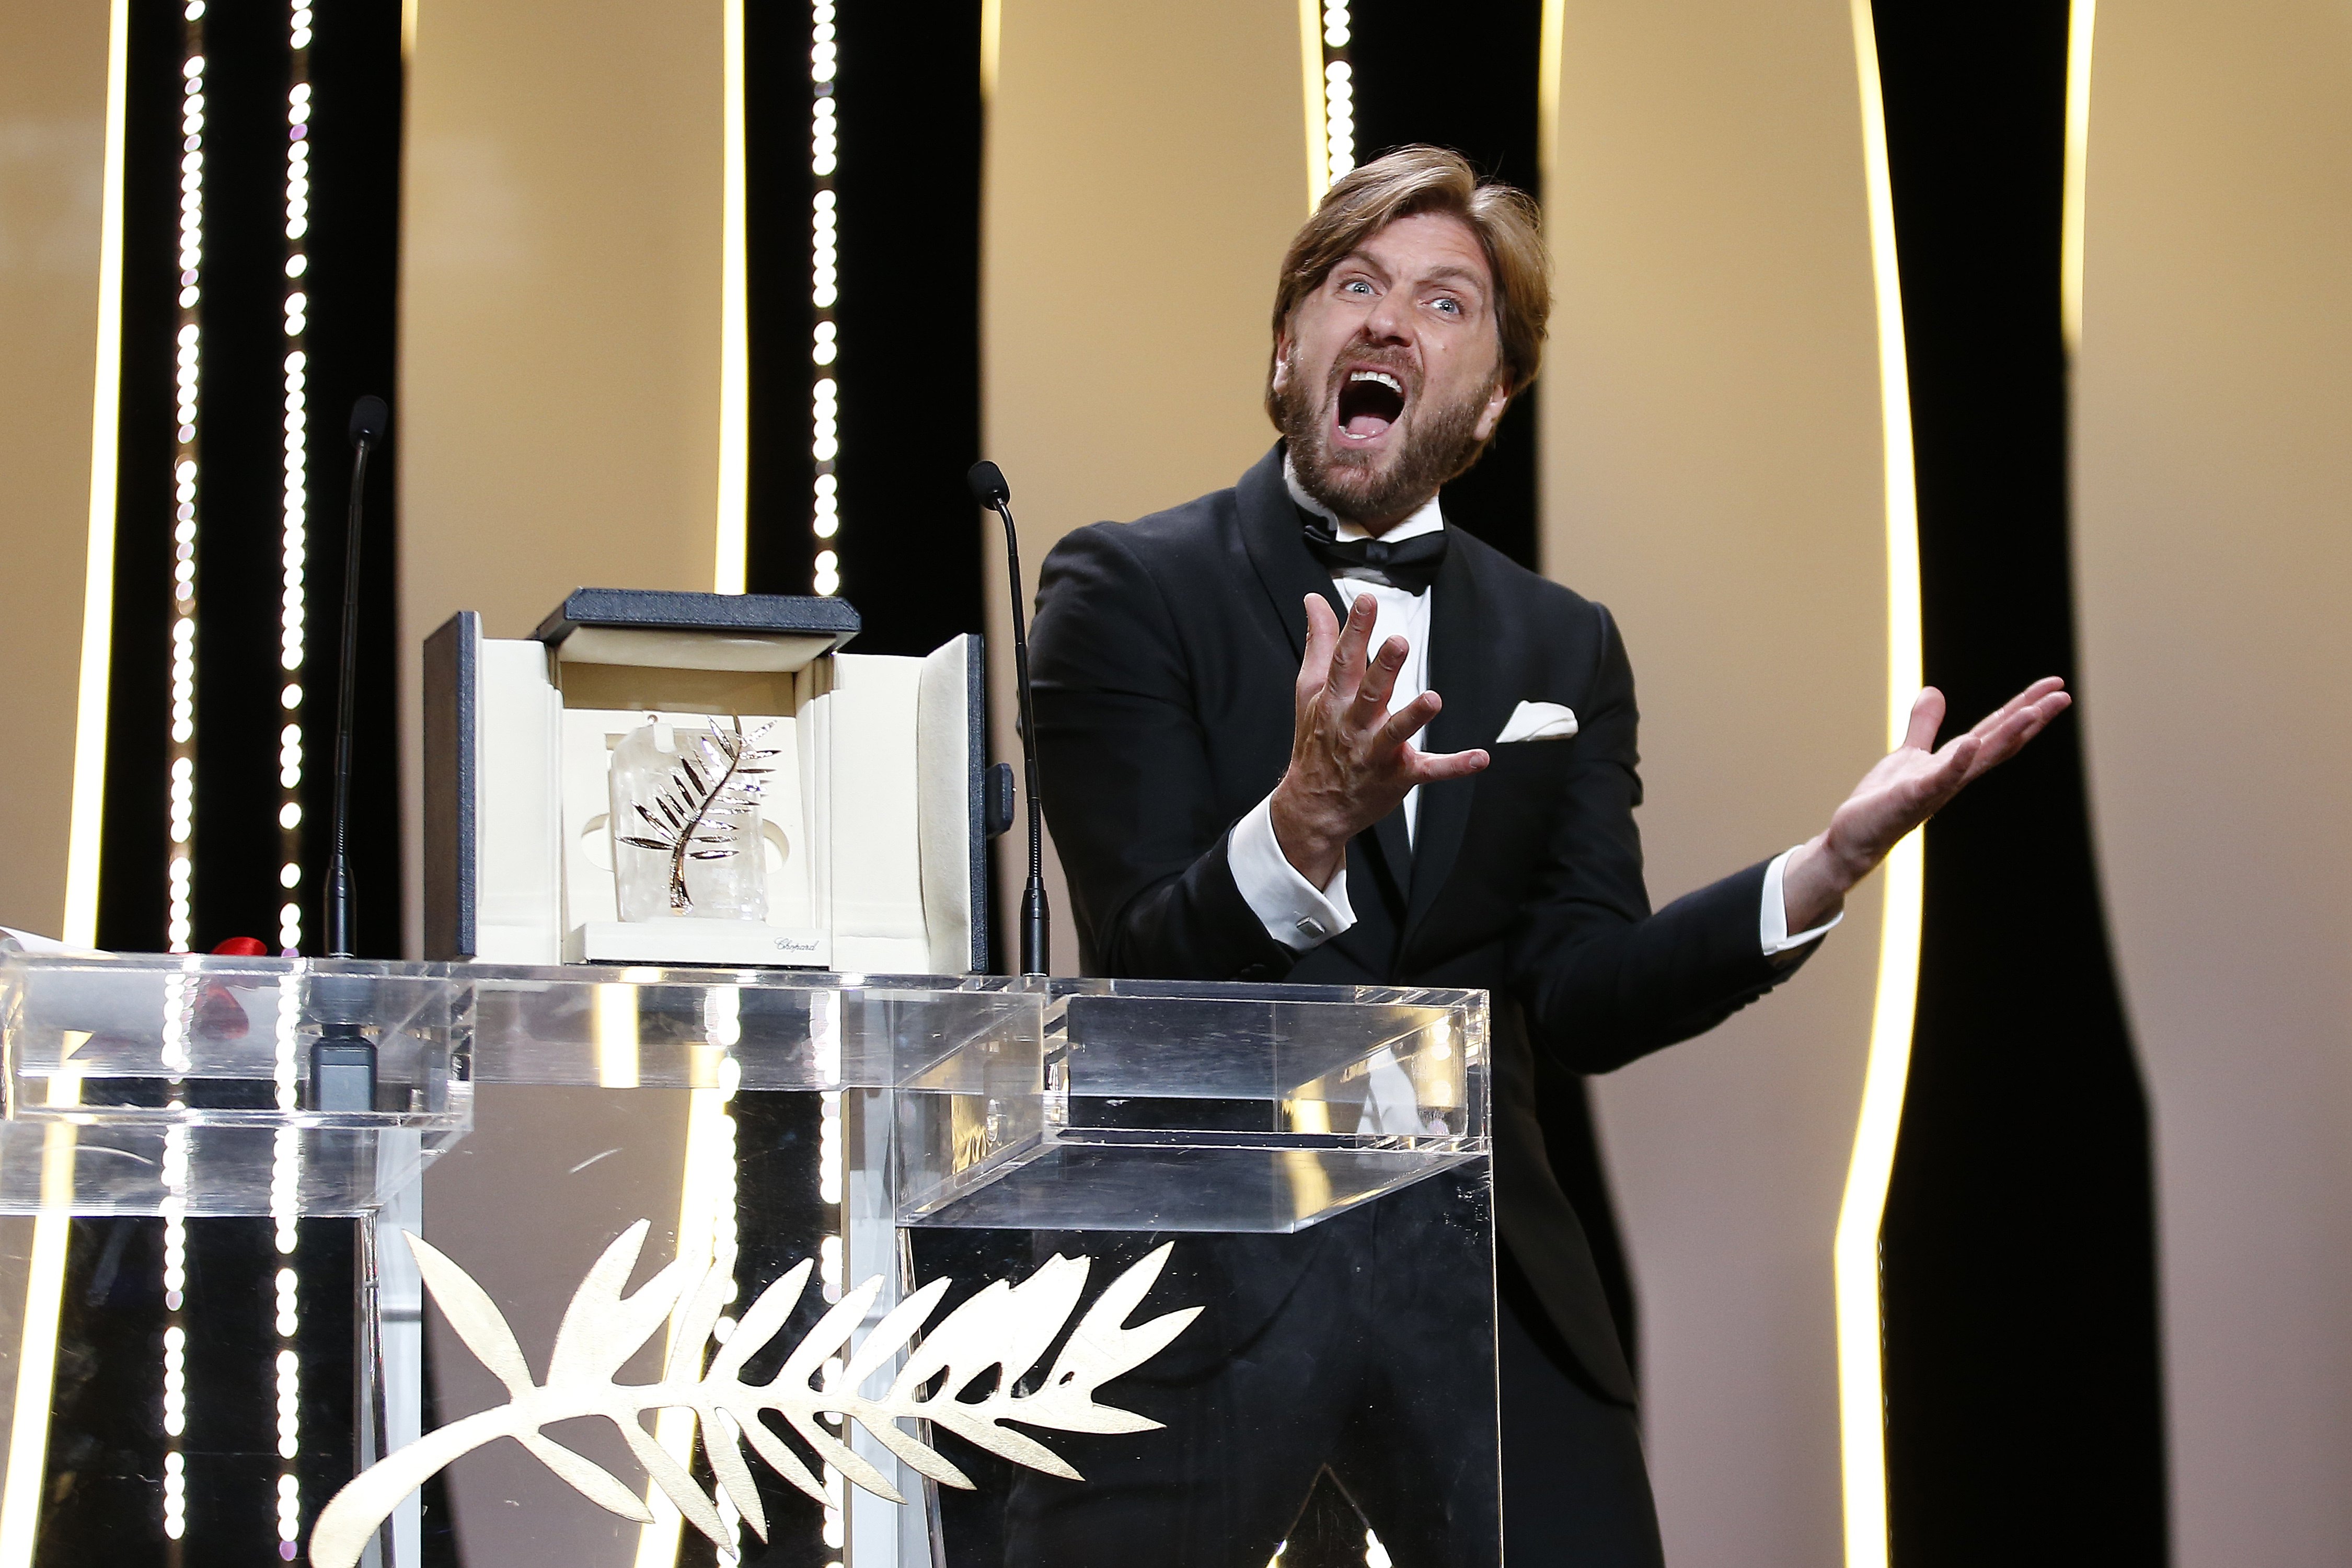 „Златната палма” - най-престижната награда на инофестивала в Кан, получи „Площадът” (The Square) на шведския режисьор Рубен Йостлунд.